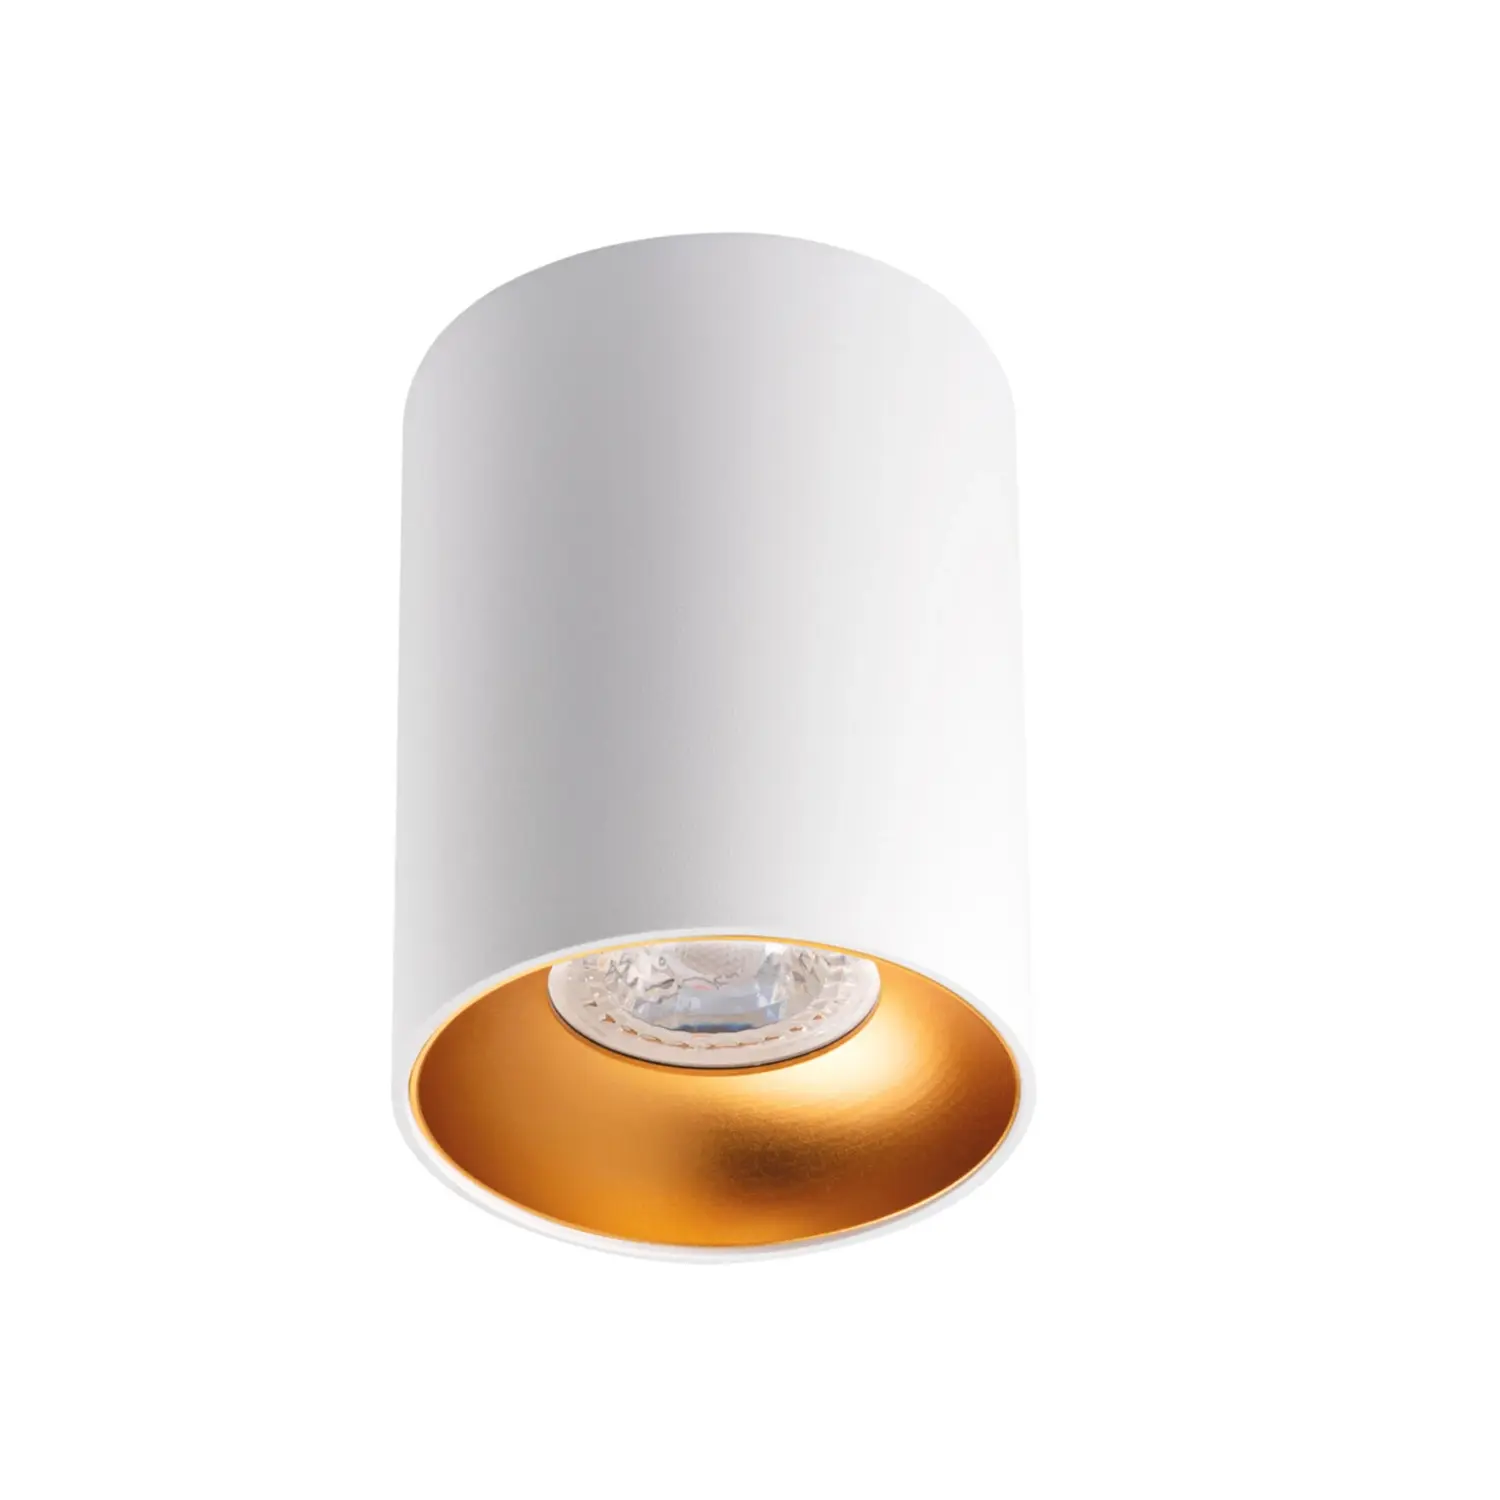 immagine del prodotto faretto decorativo lampada riti soffitto 230v gu10 bianco